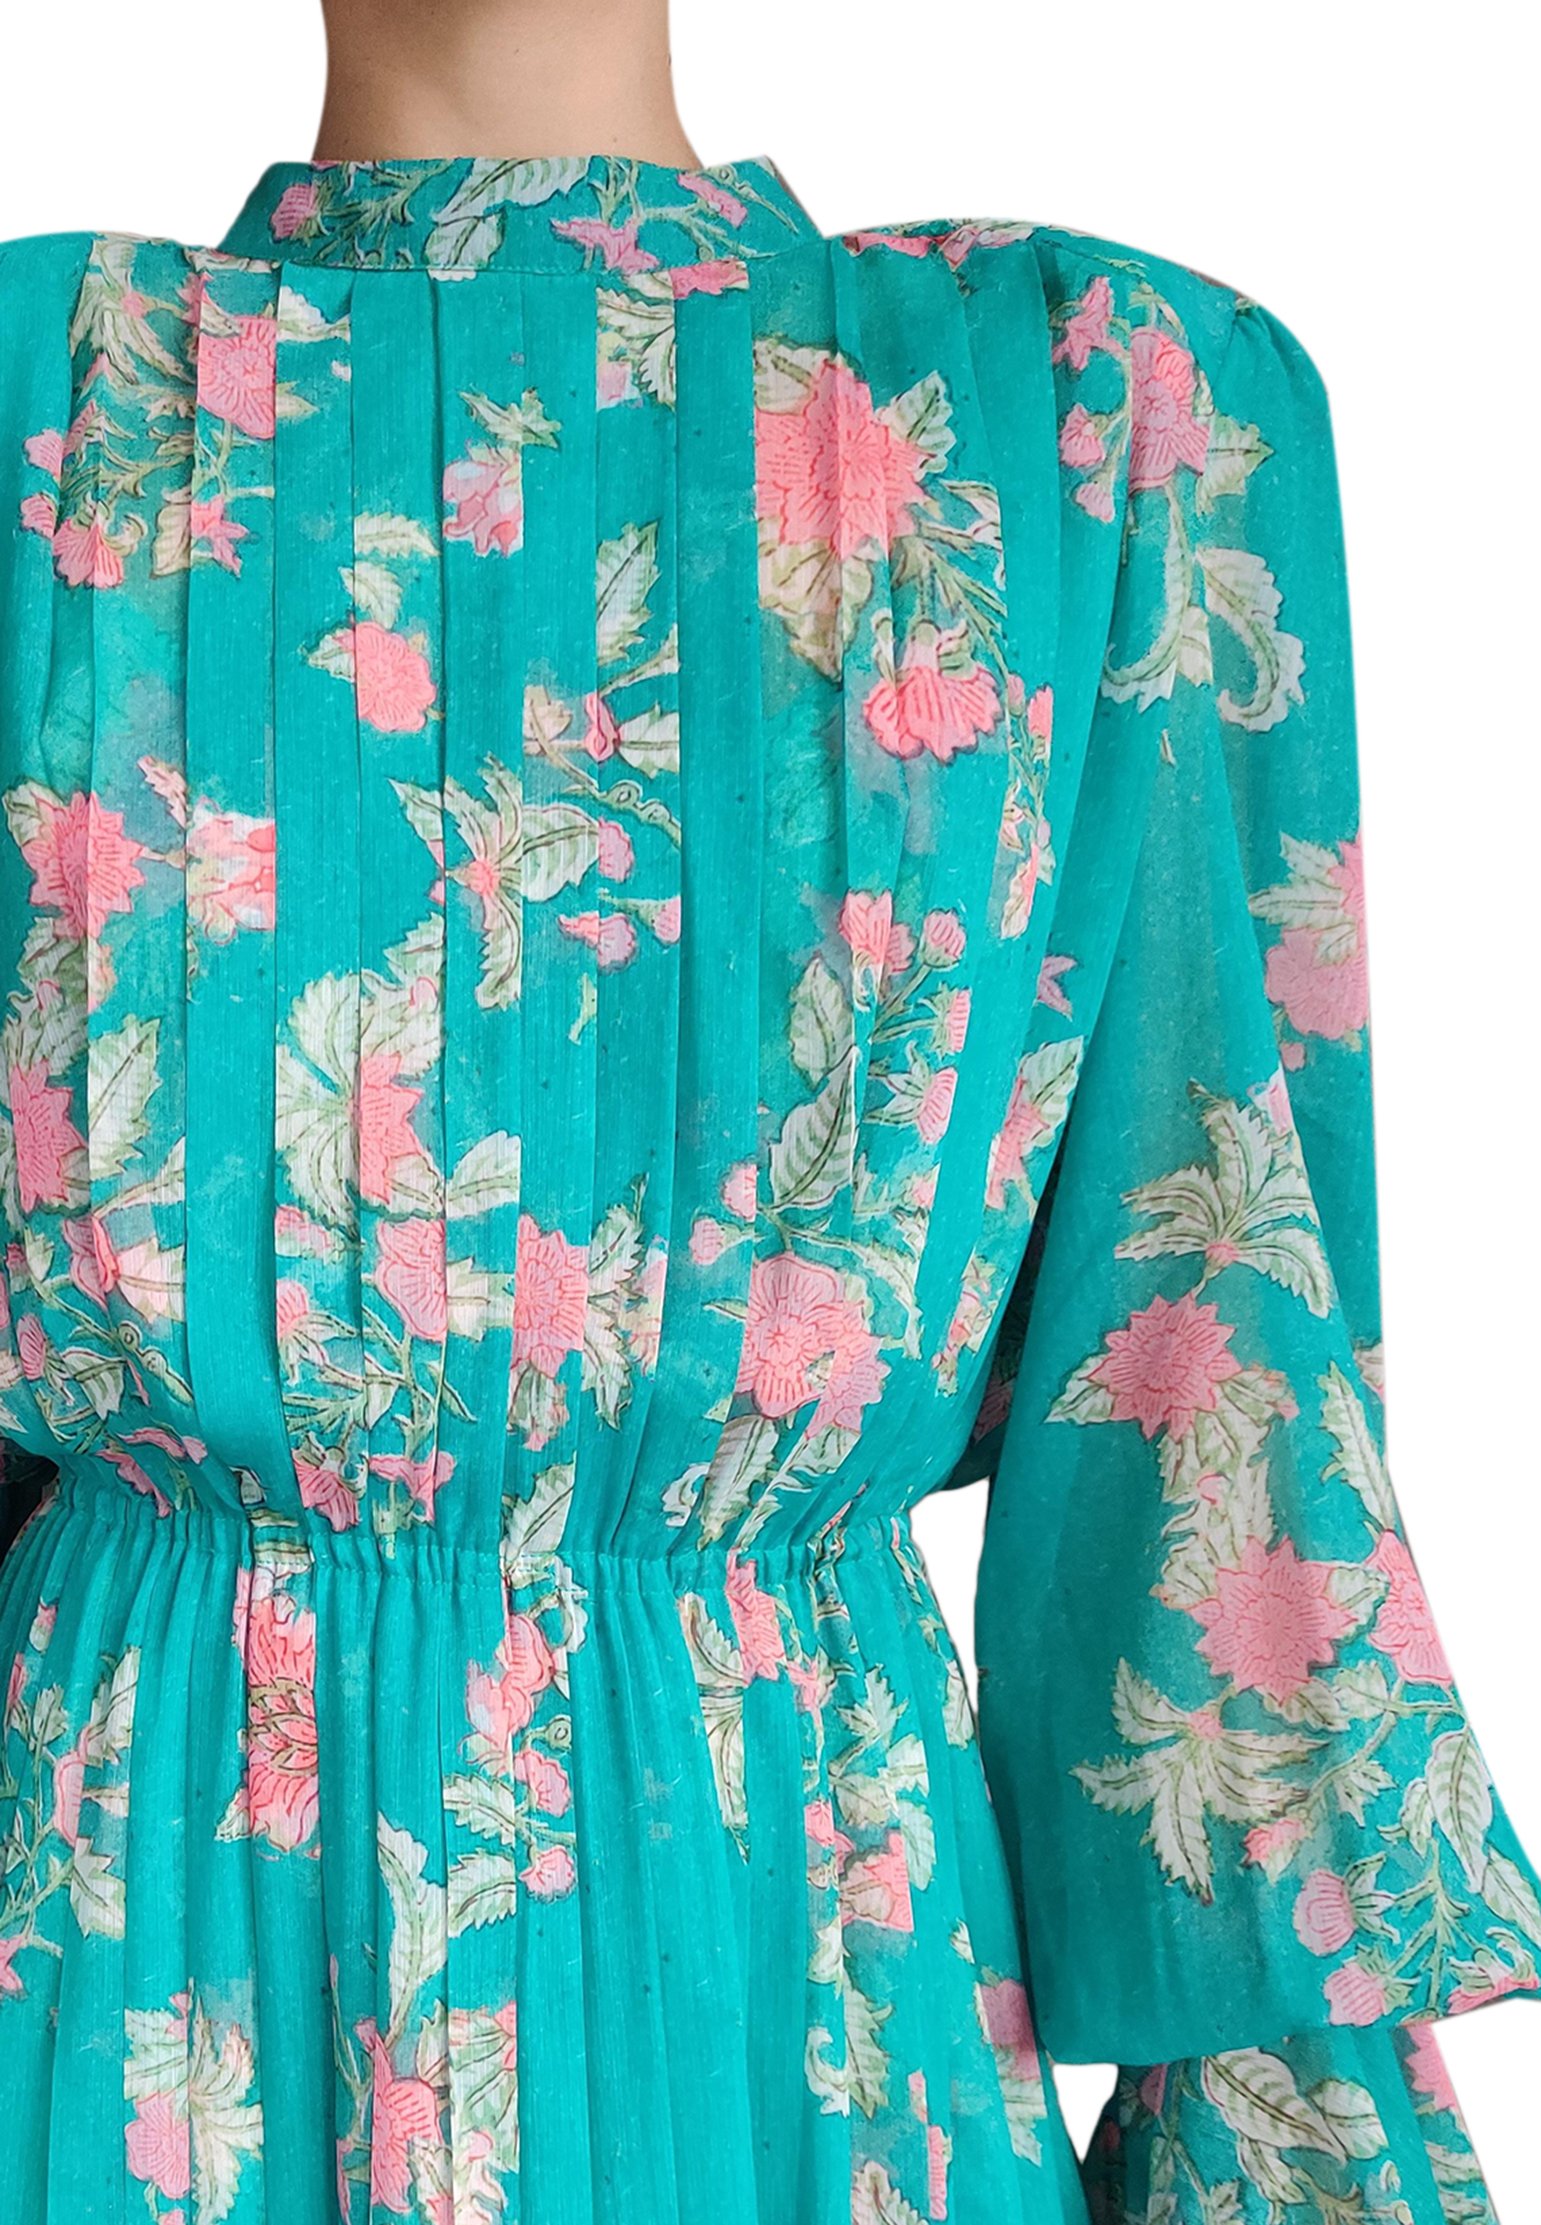 Dress HEMANT&NANDITA Color: green (Code: 748) in online store Allure